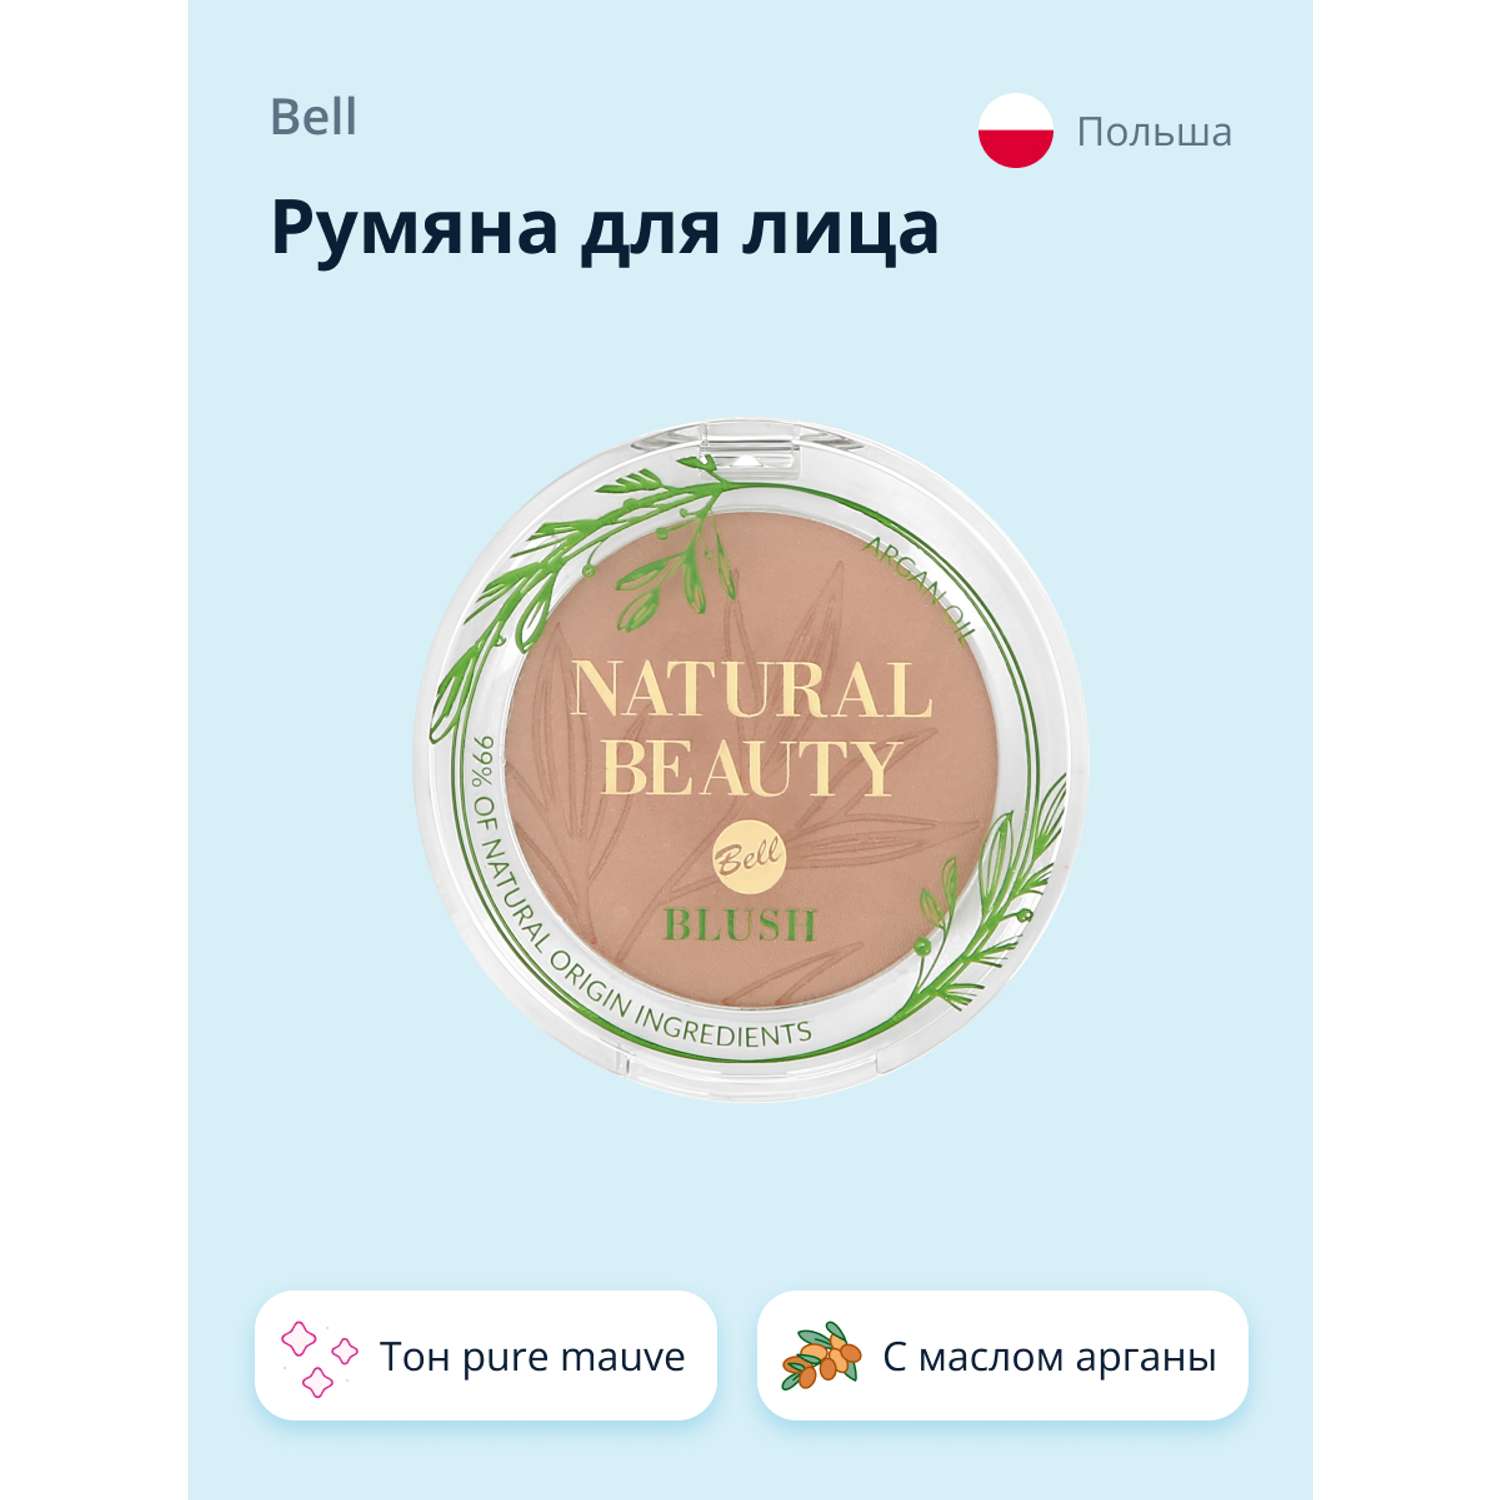 Румяна Bell Natural beauty blush тон pure mauve 99% натуральных ингредиентов - фото 1